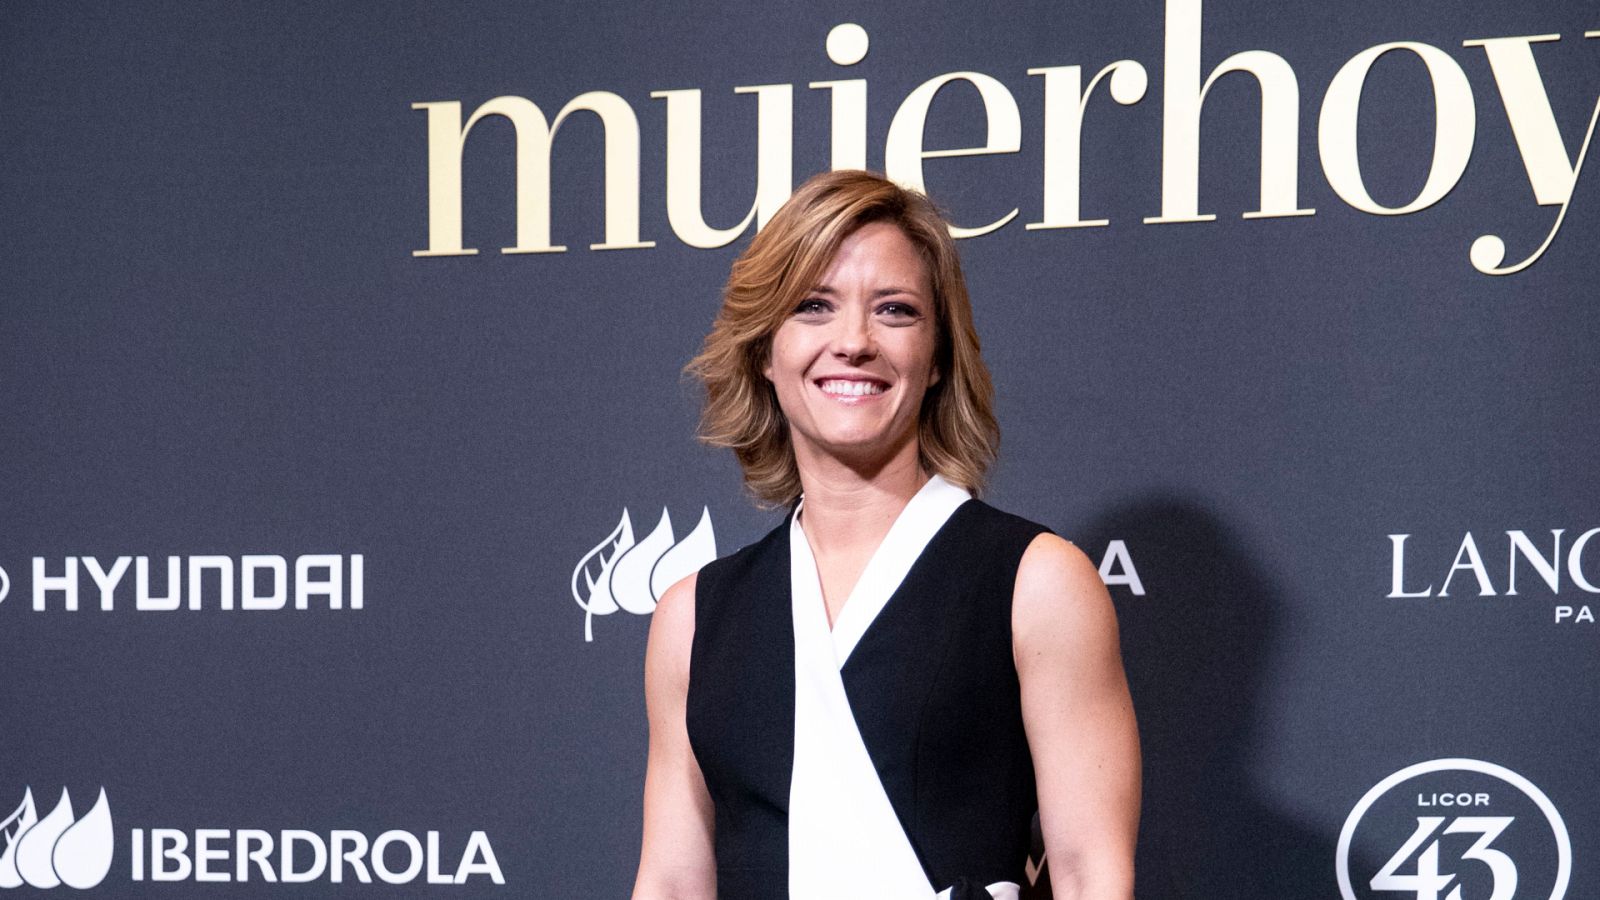 María Casado, Agatha Ruiz o María Pombo: ¿quiénes han sido las que más han destacado en los Premios Mujerhoy?